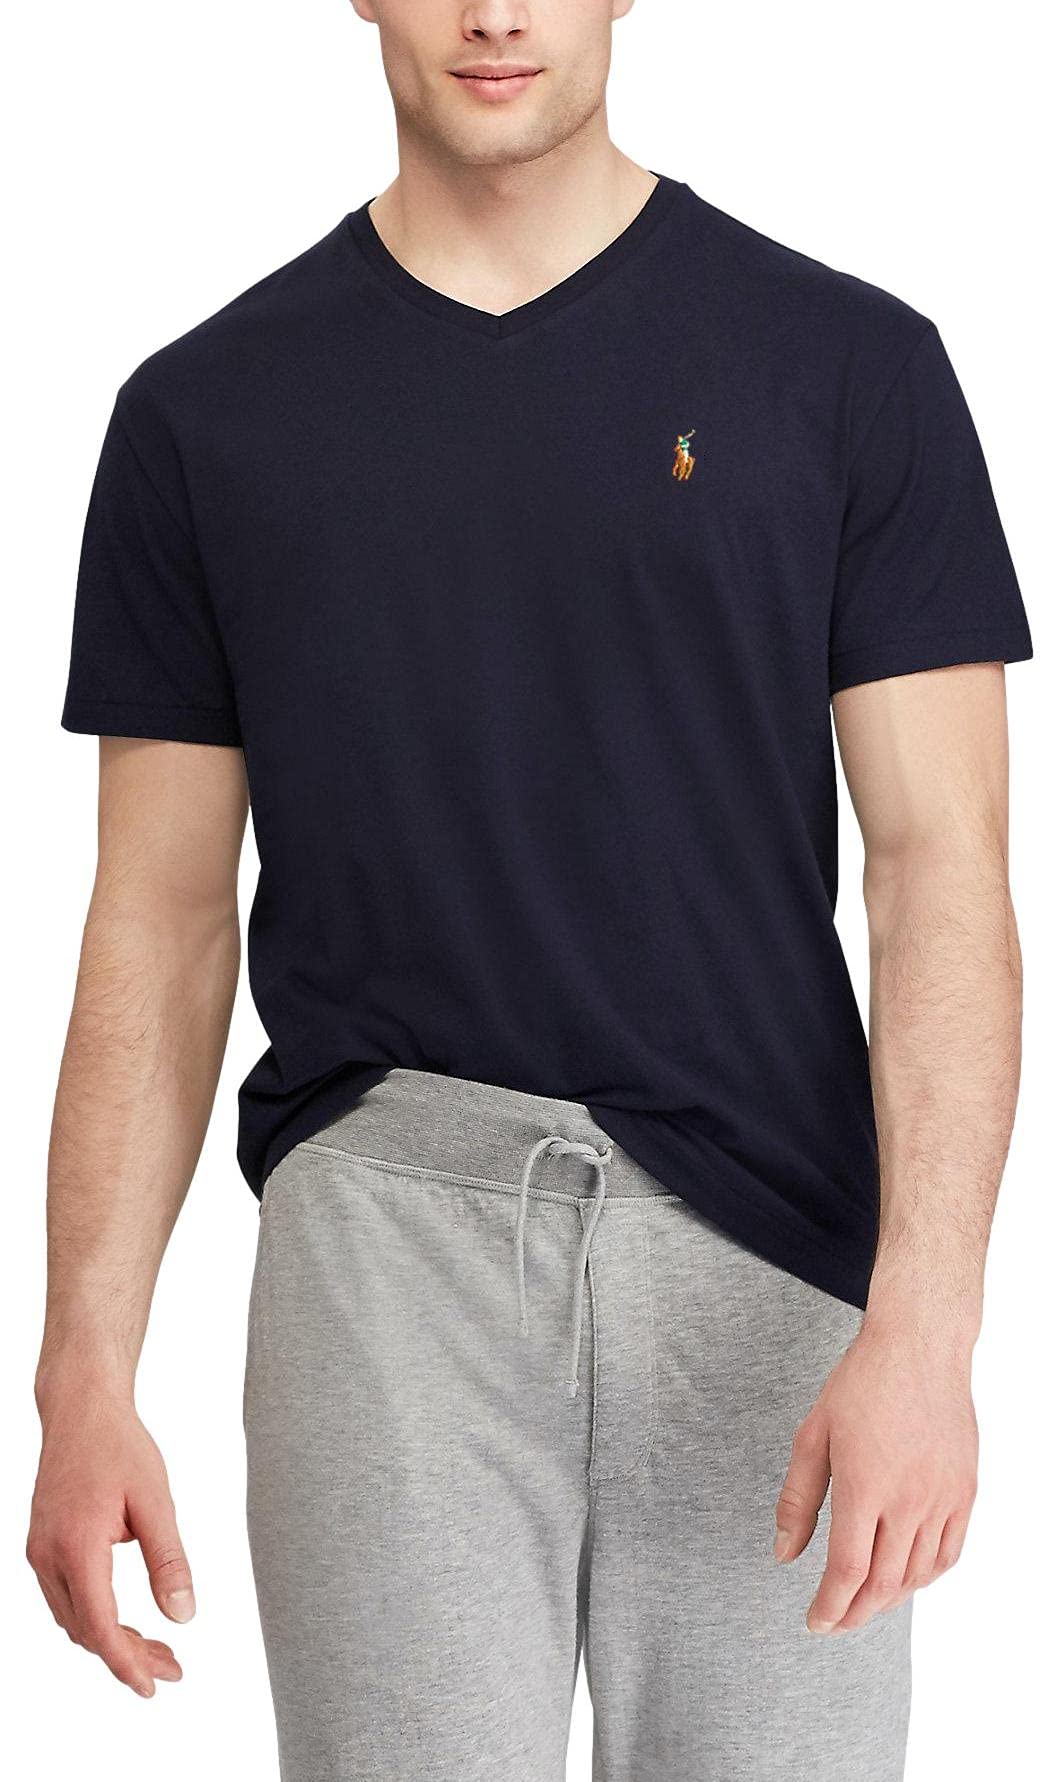 Introducir 30+ imagen polo ralph lauren men’s classic fit v neck t shirt